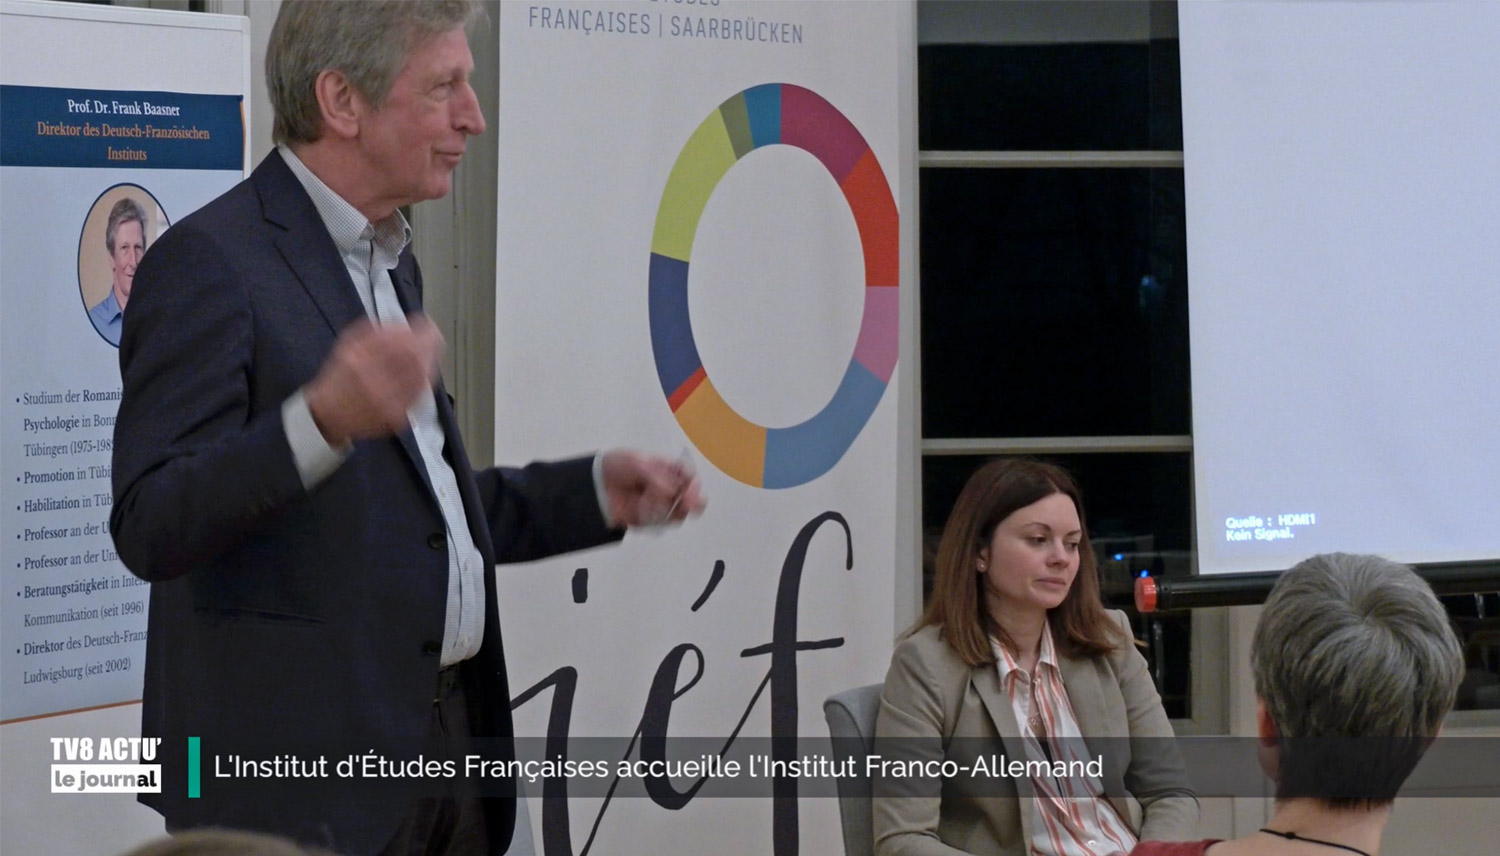 IEF rencontres – Professor Dr. Frank Bassner Sarrebruck 06/12/2023